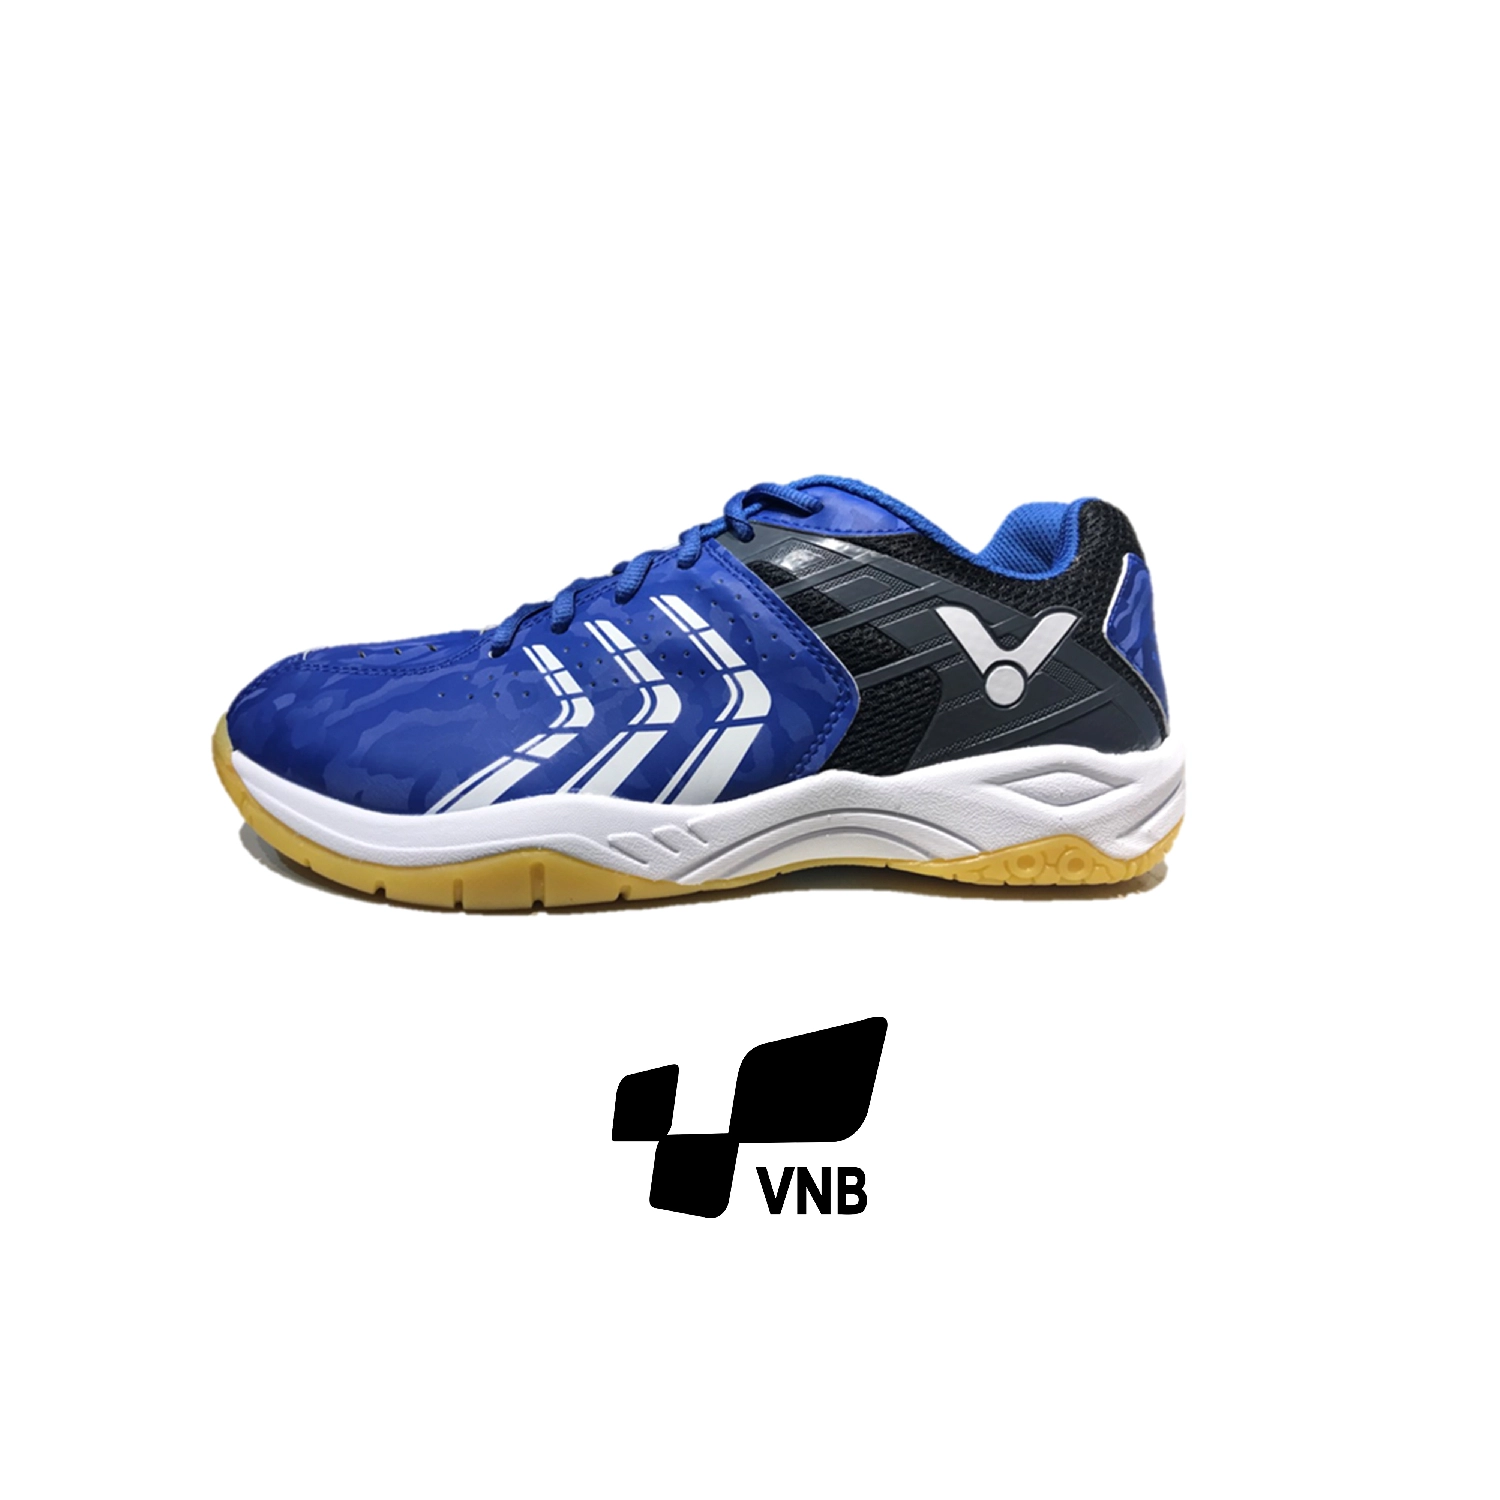 Giày cầu lông Victor 920 FC - Xanh đen